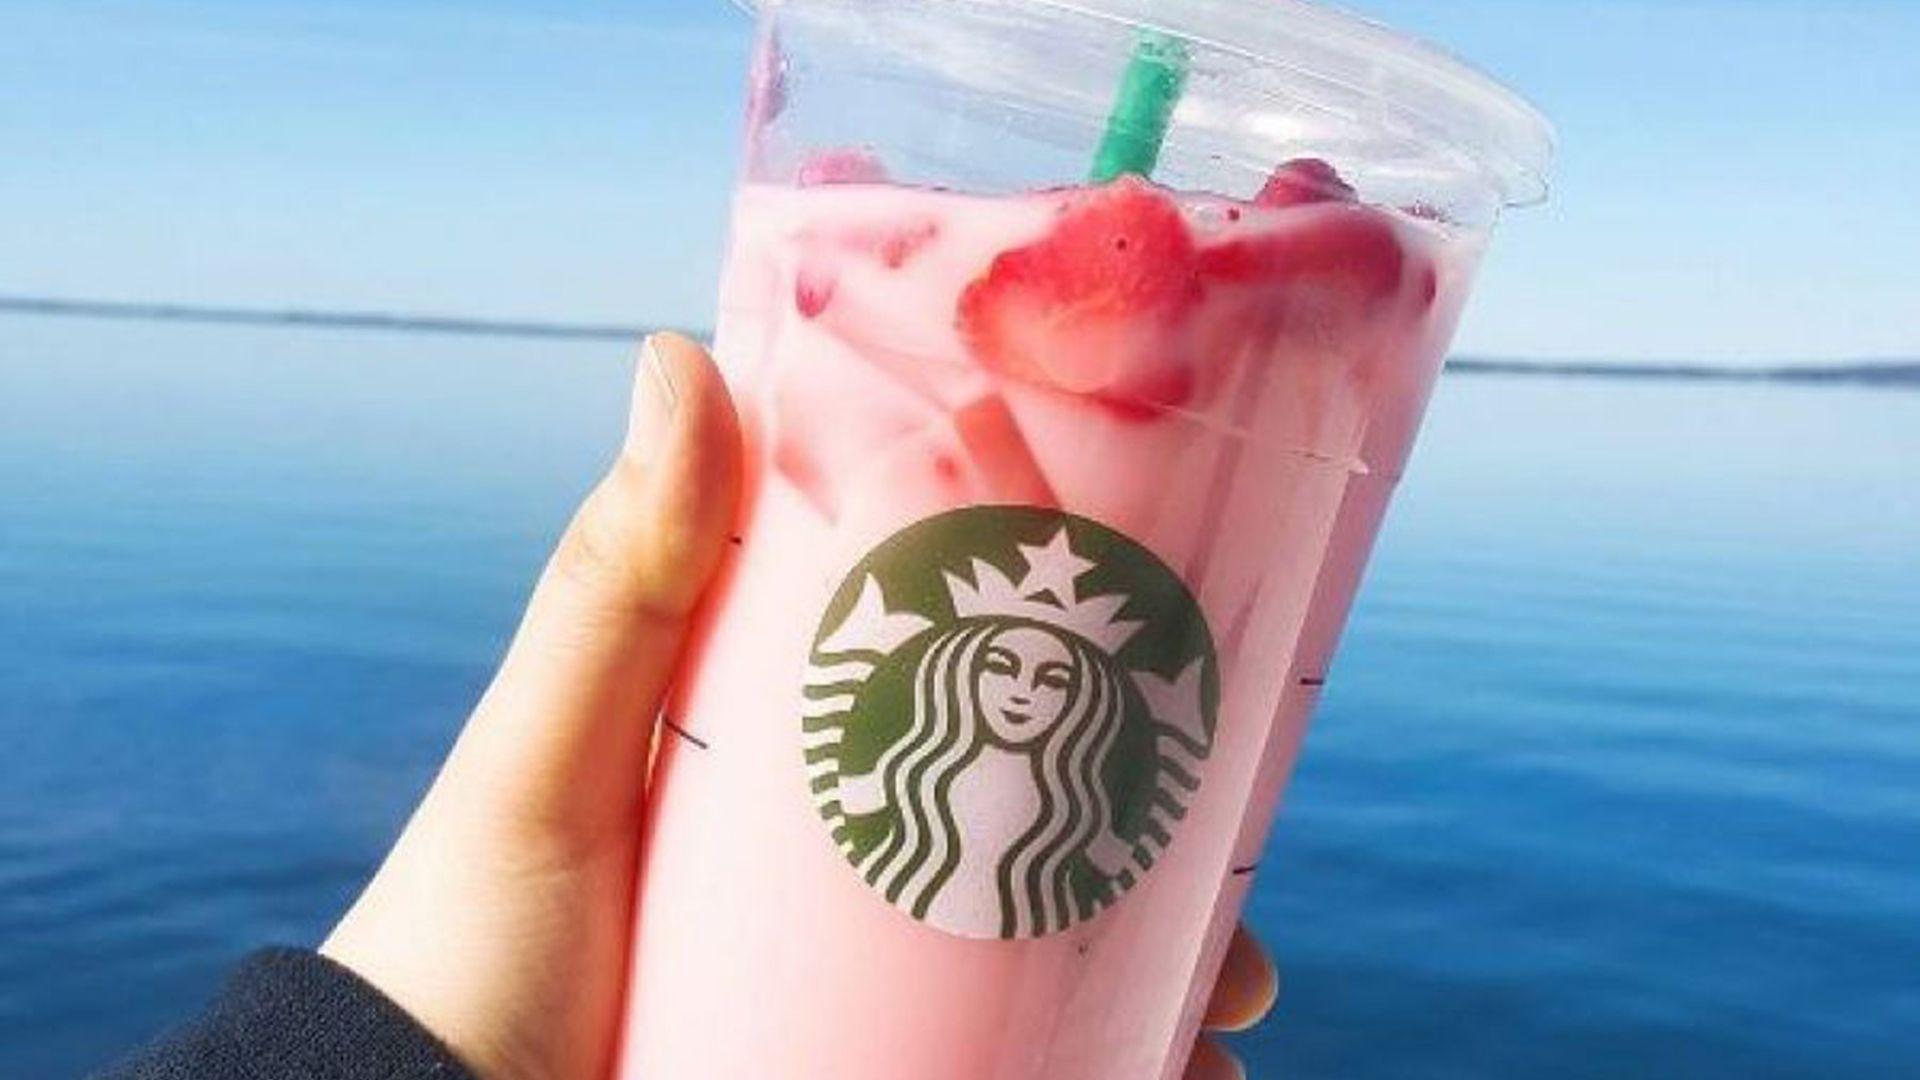 Does Starbucks' Pink Drink help increase breast milk?